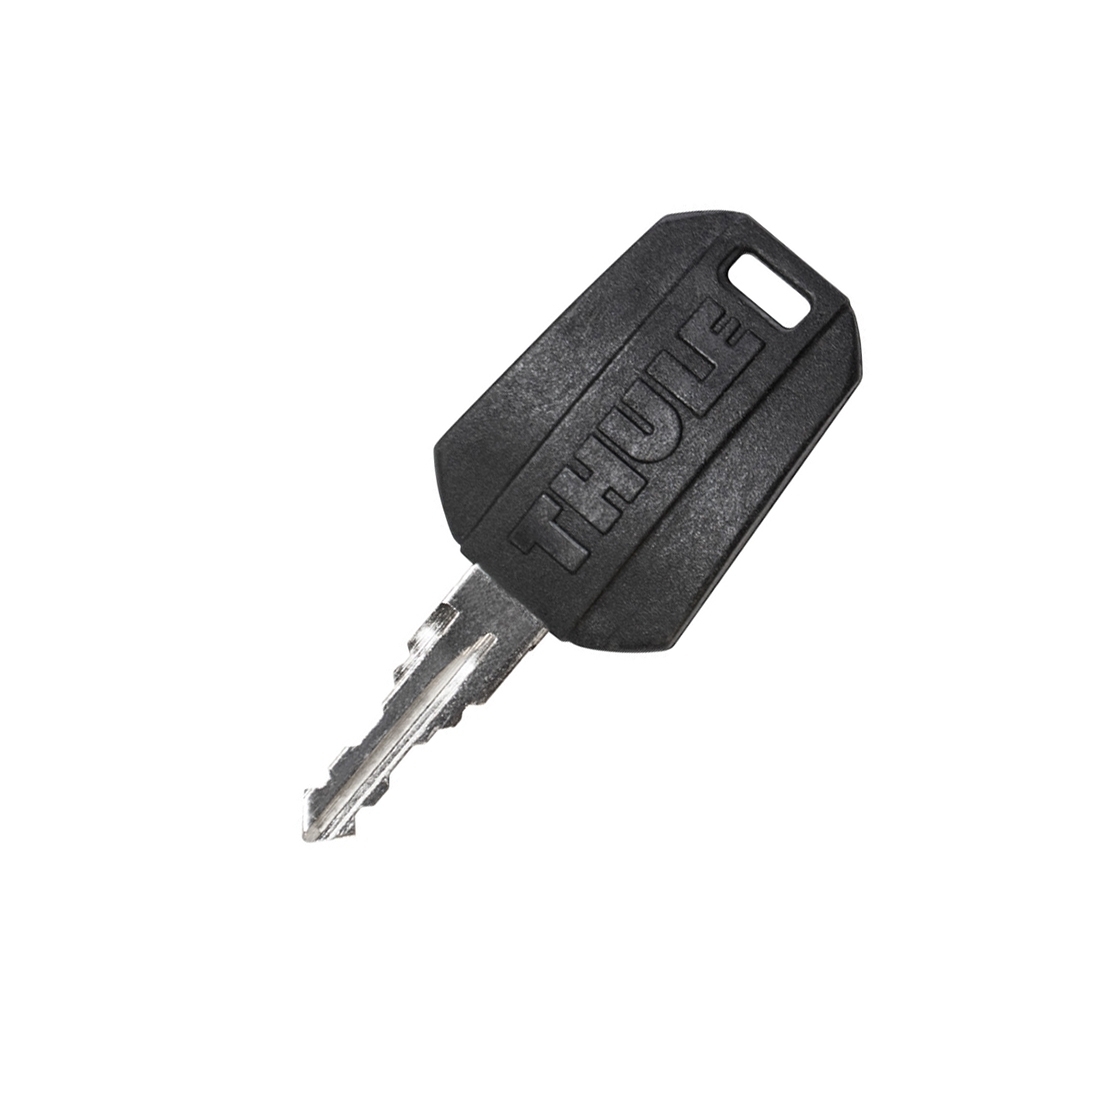 THULE Ersatzschlüssel Schlüssel N182 Dachträger Dachbox Fahrradträger Heckträger 